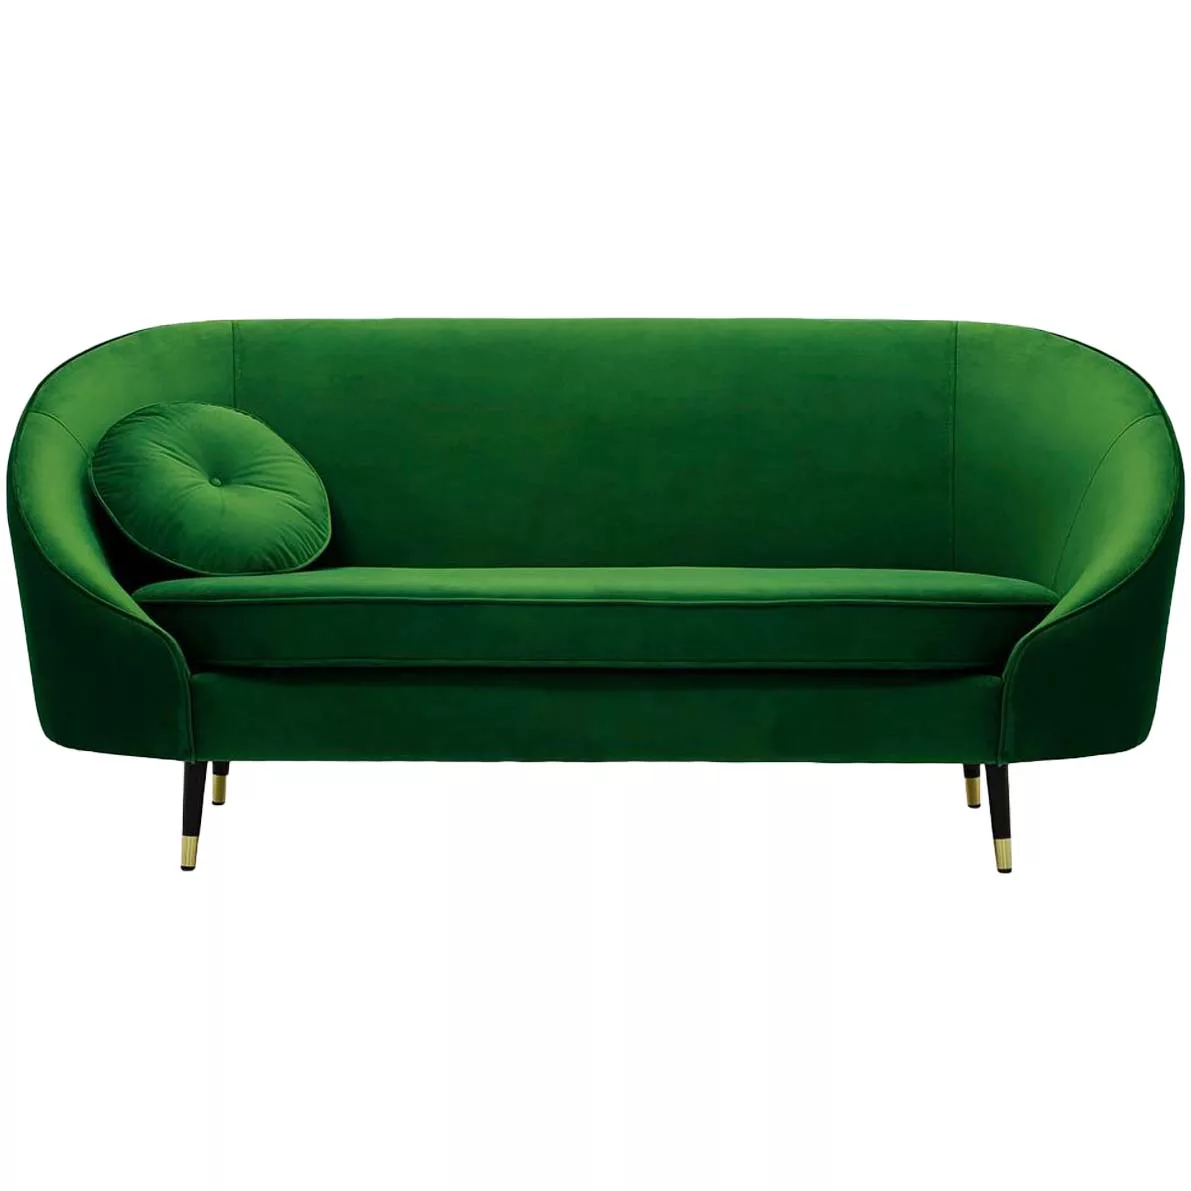 Furniture & décor hire - Lounge & Linger